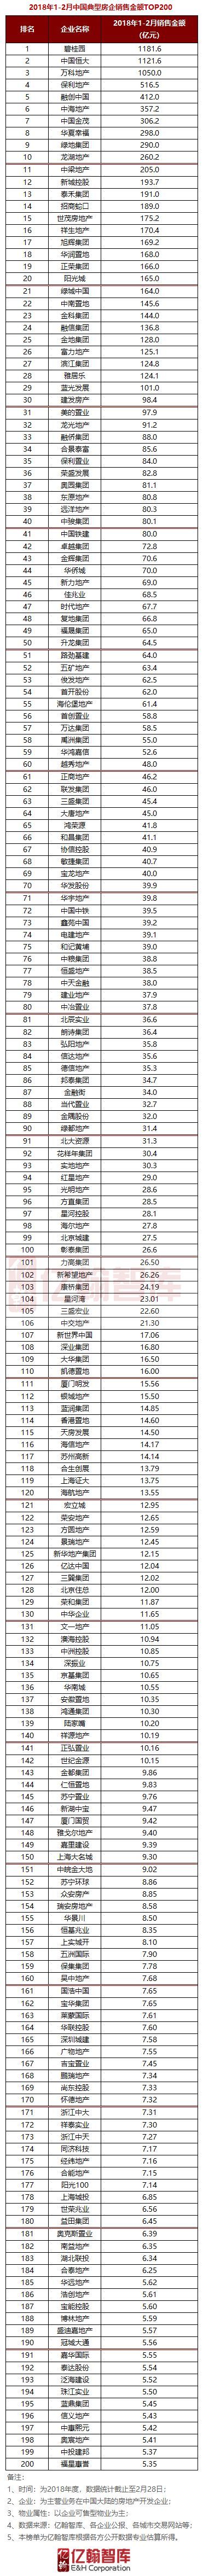 重磅 | 2018年1-2月中国典型房企销售业绩TOP200【第44期】